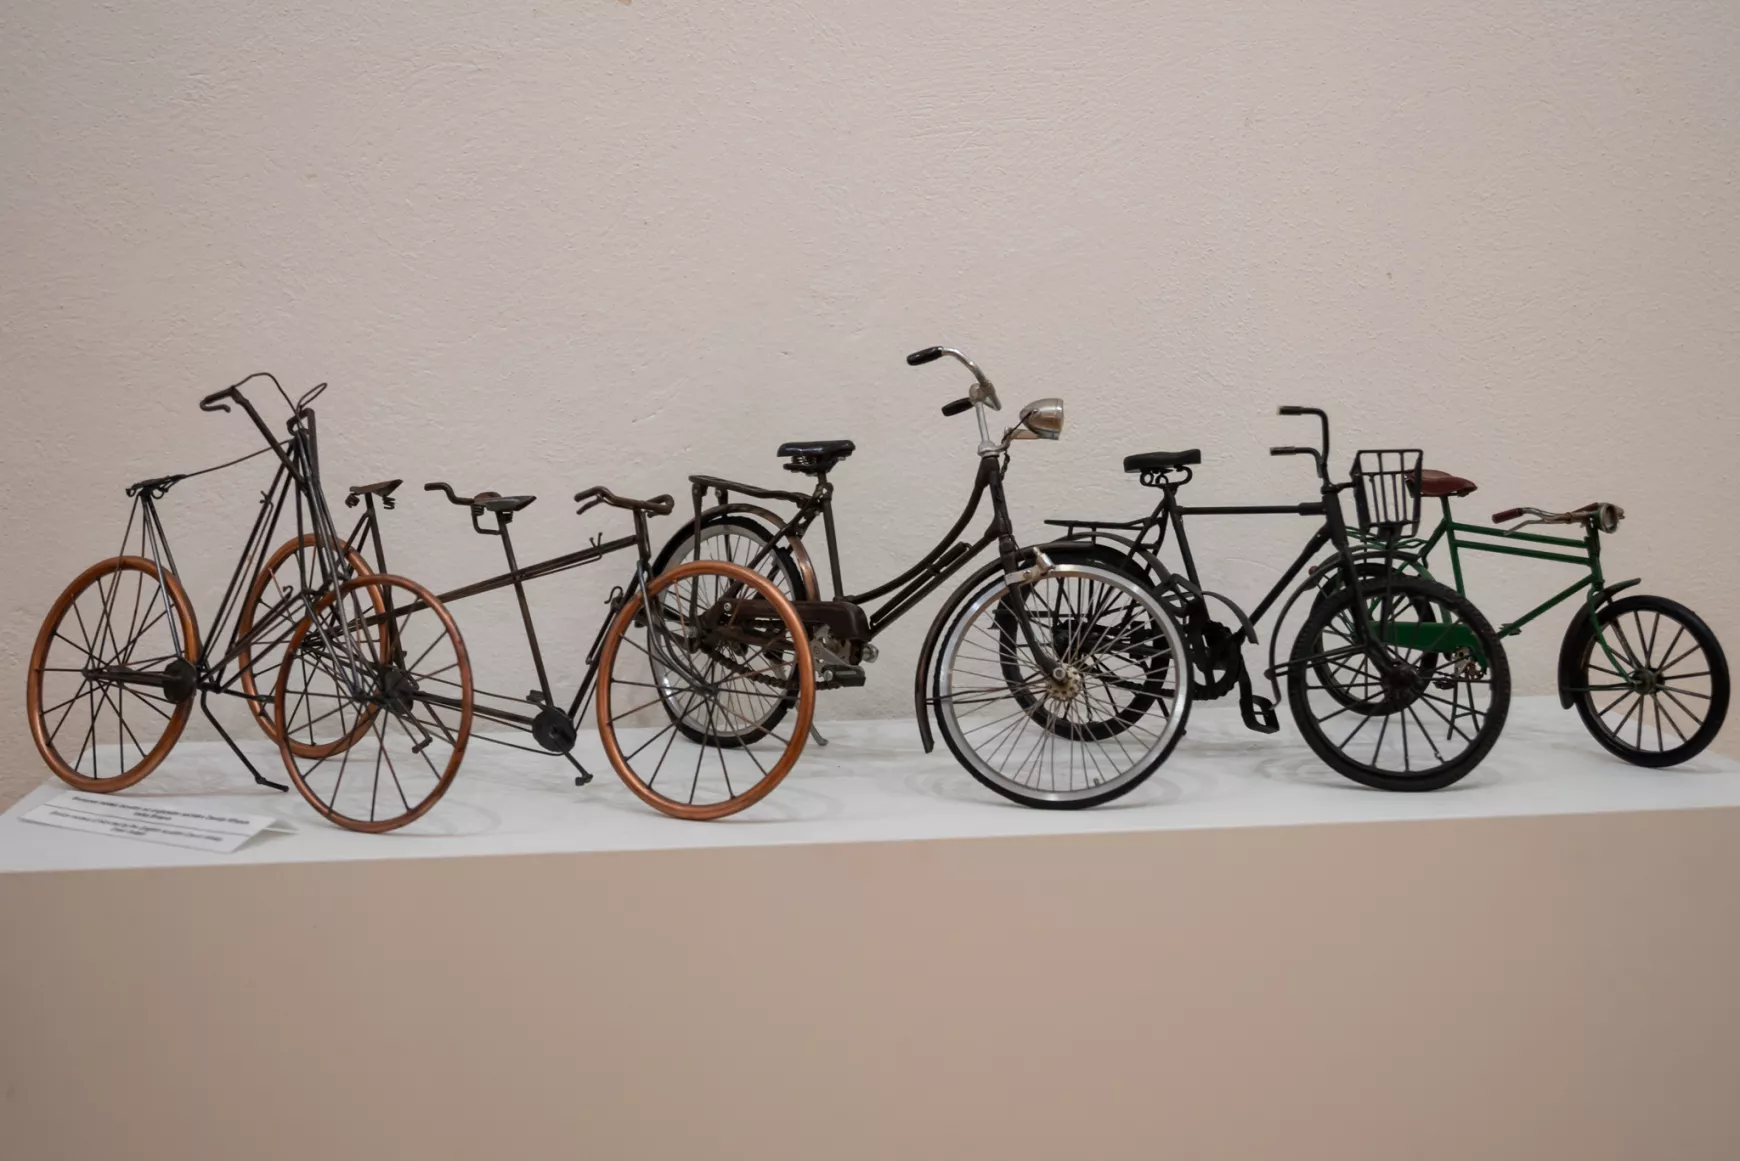 2024-06-11 Rozsnyó, bányászati múzeum, kiállítás, Két keréken, kerékpár, bicikli